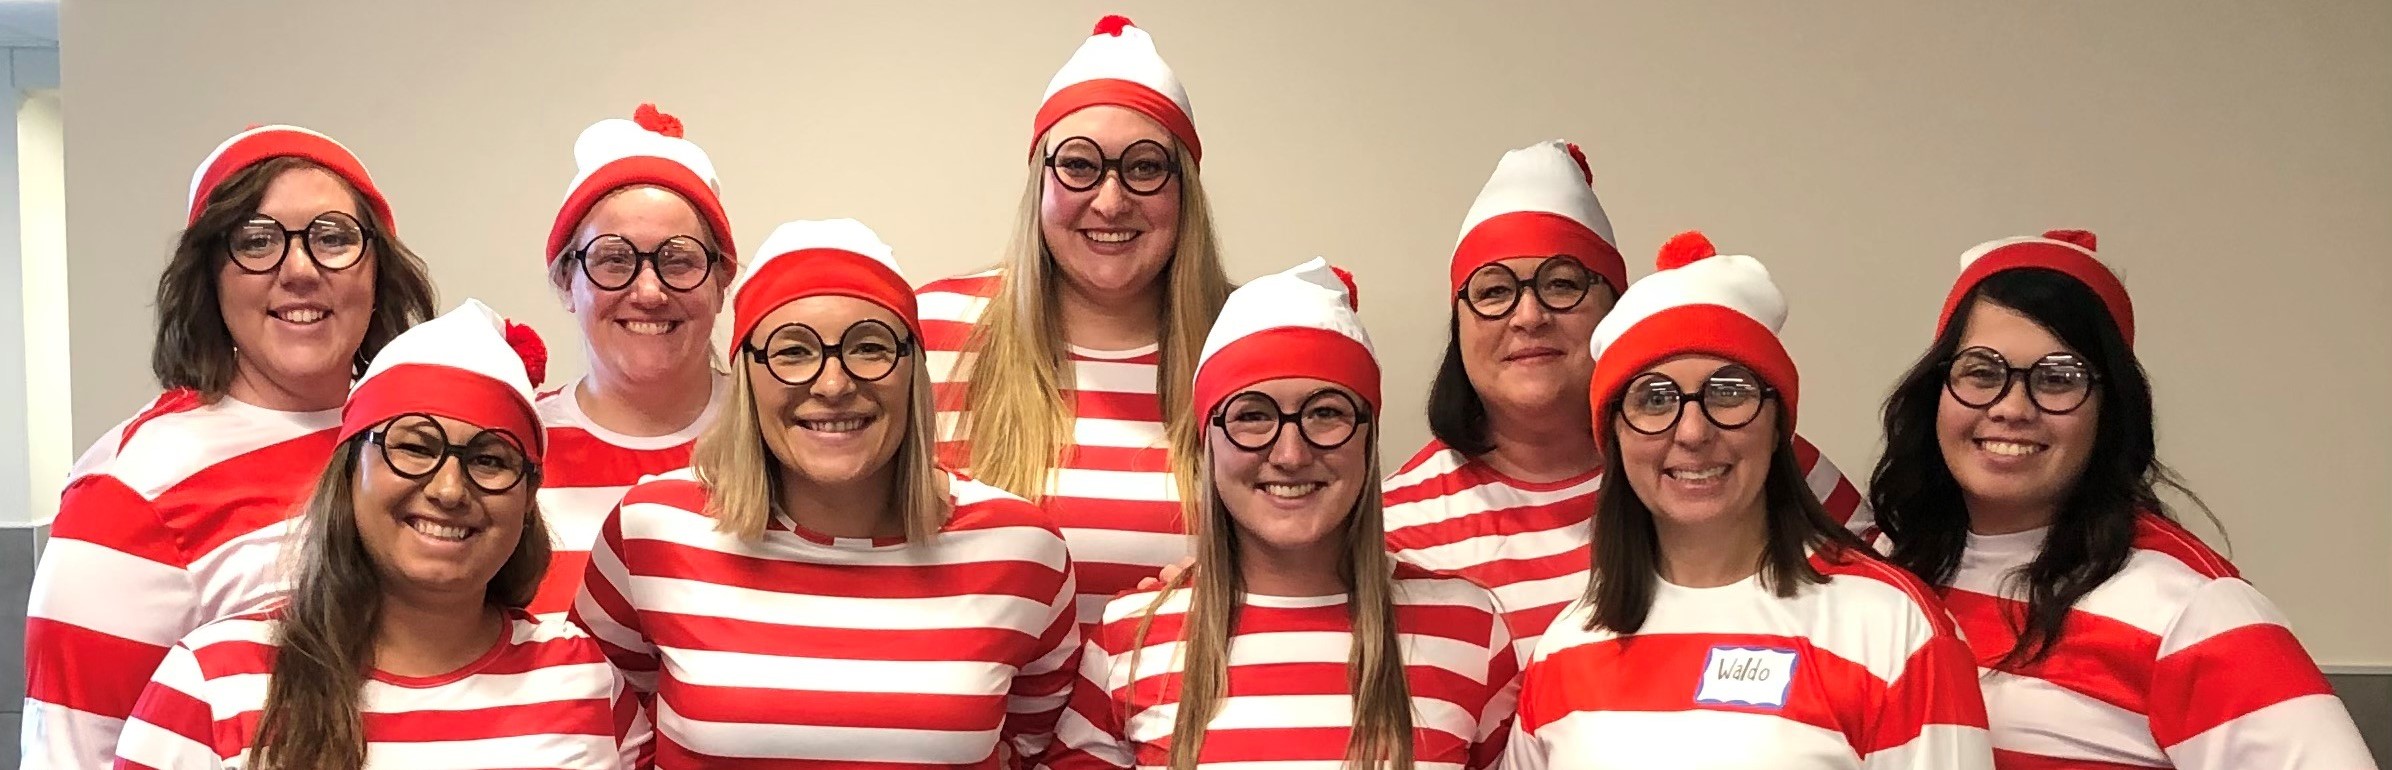 Fourth Grade Teachers in Where's Waldo costumes